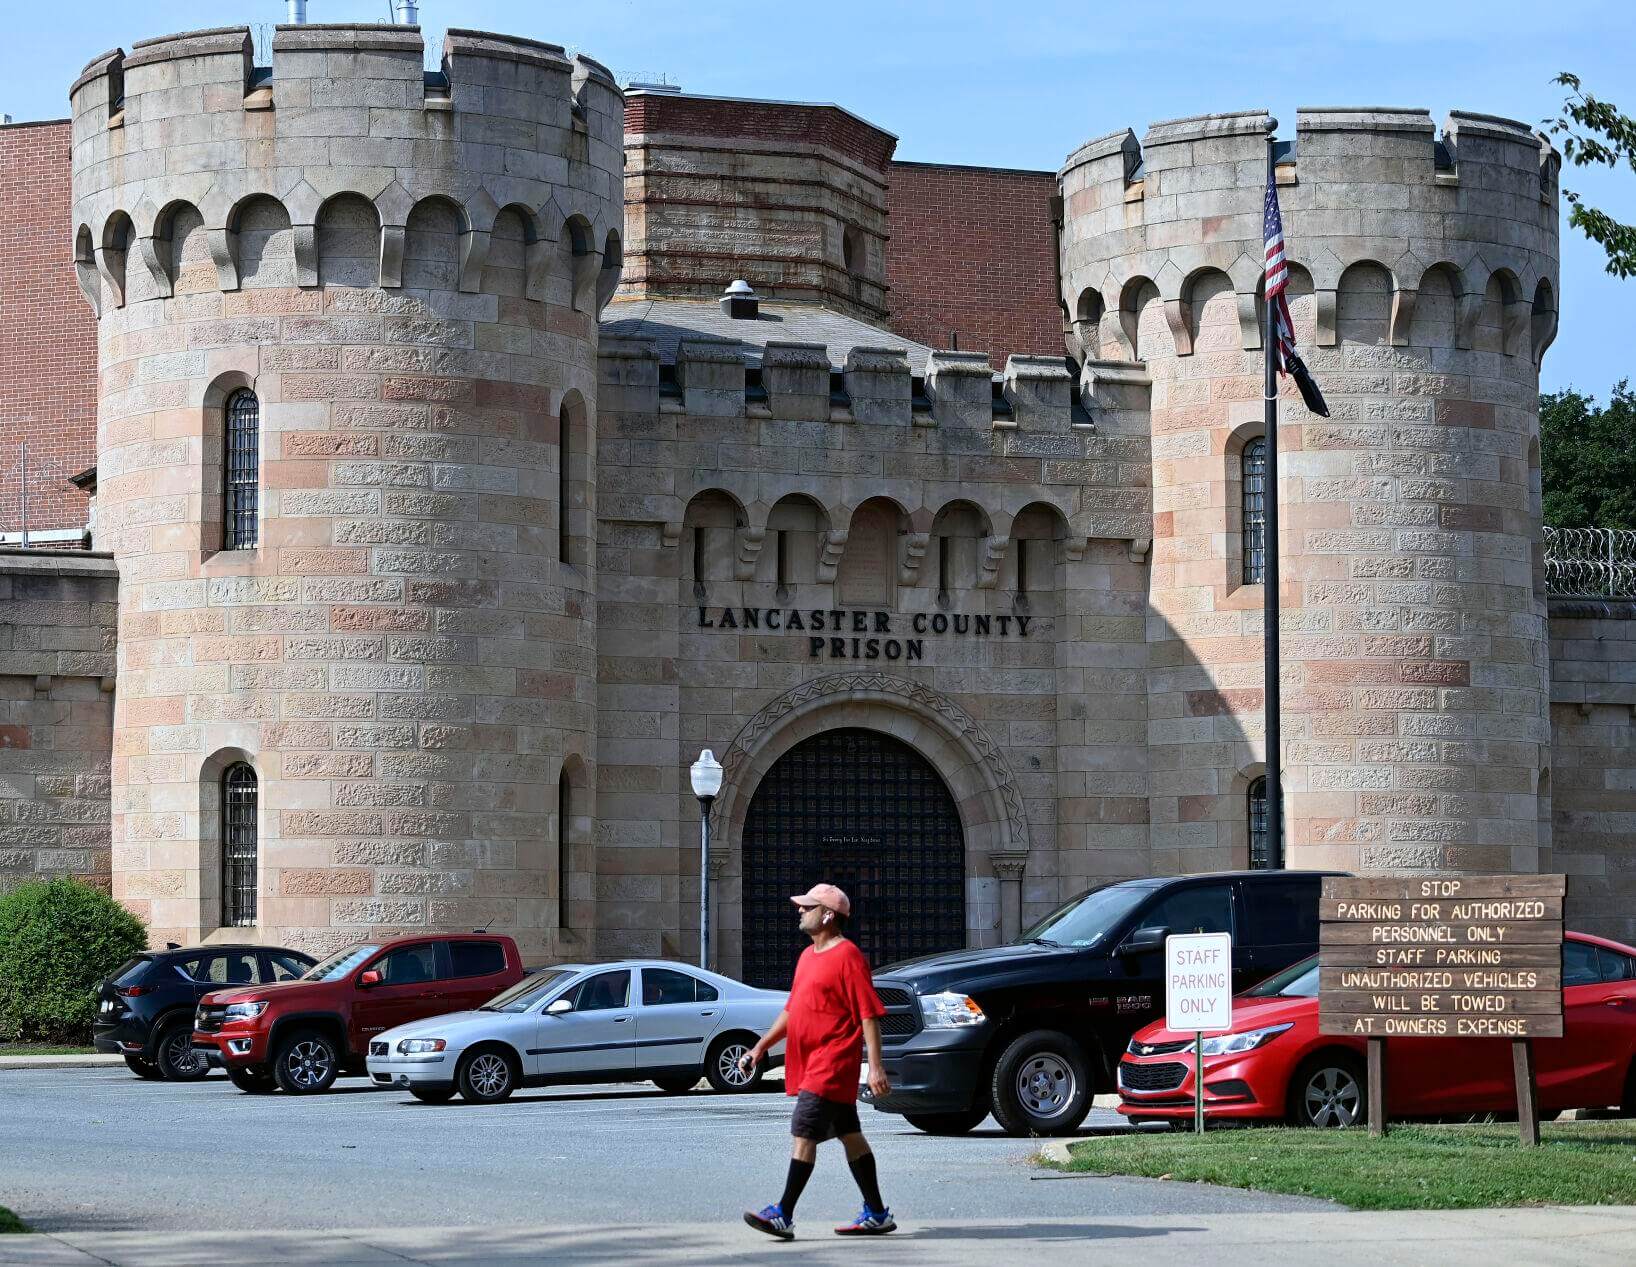 Lancaster City Prison